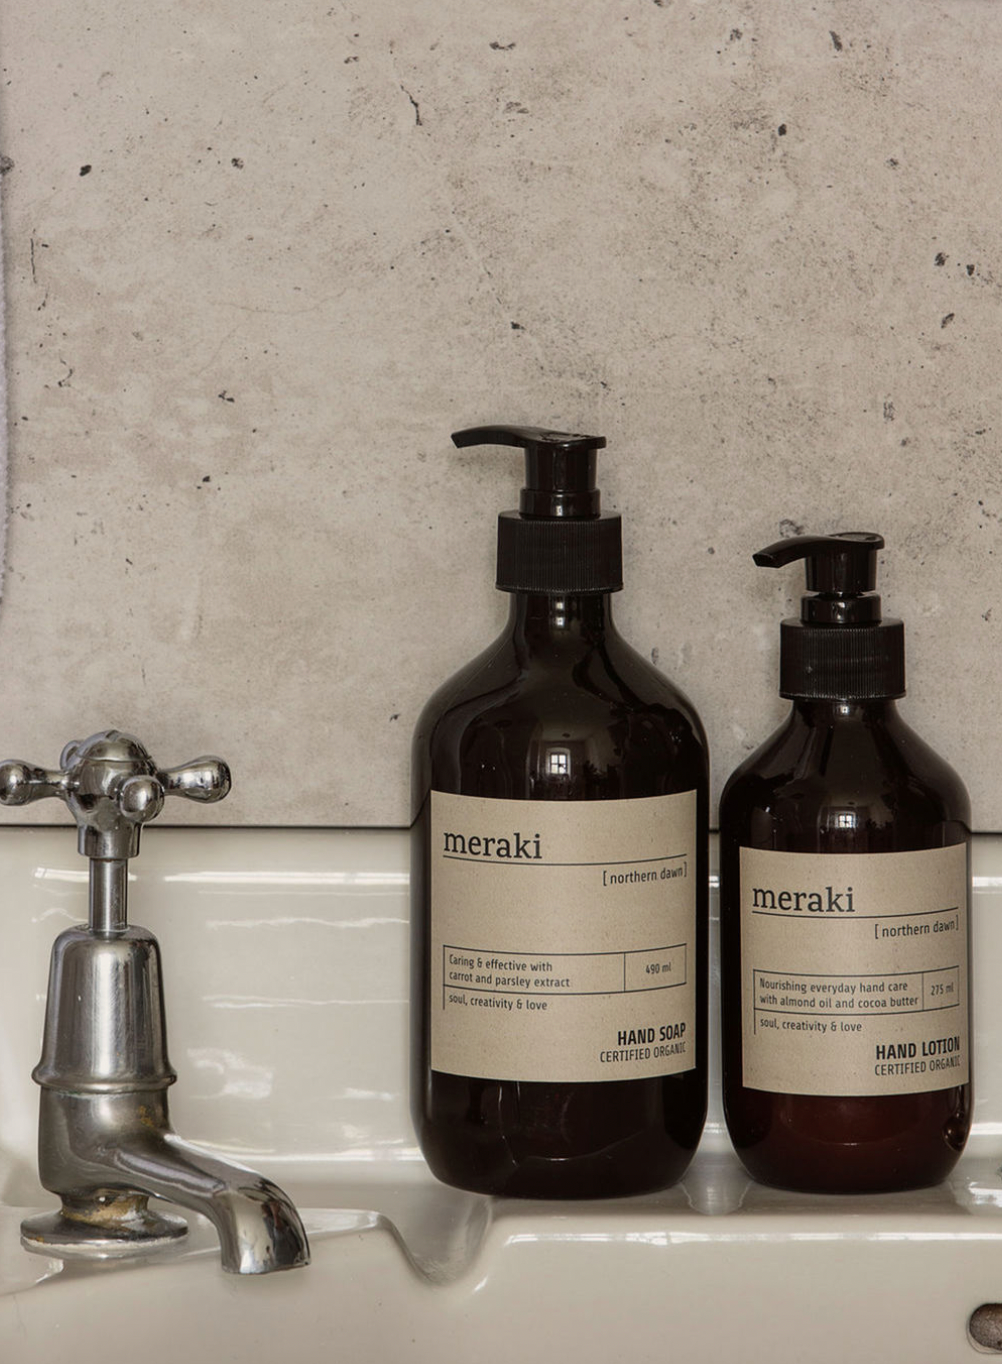 Meraki Hand Soap – Company